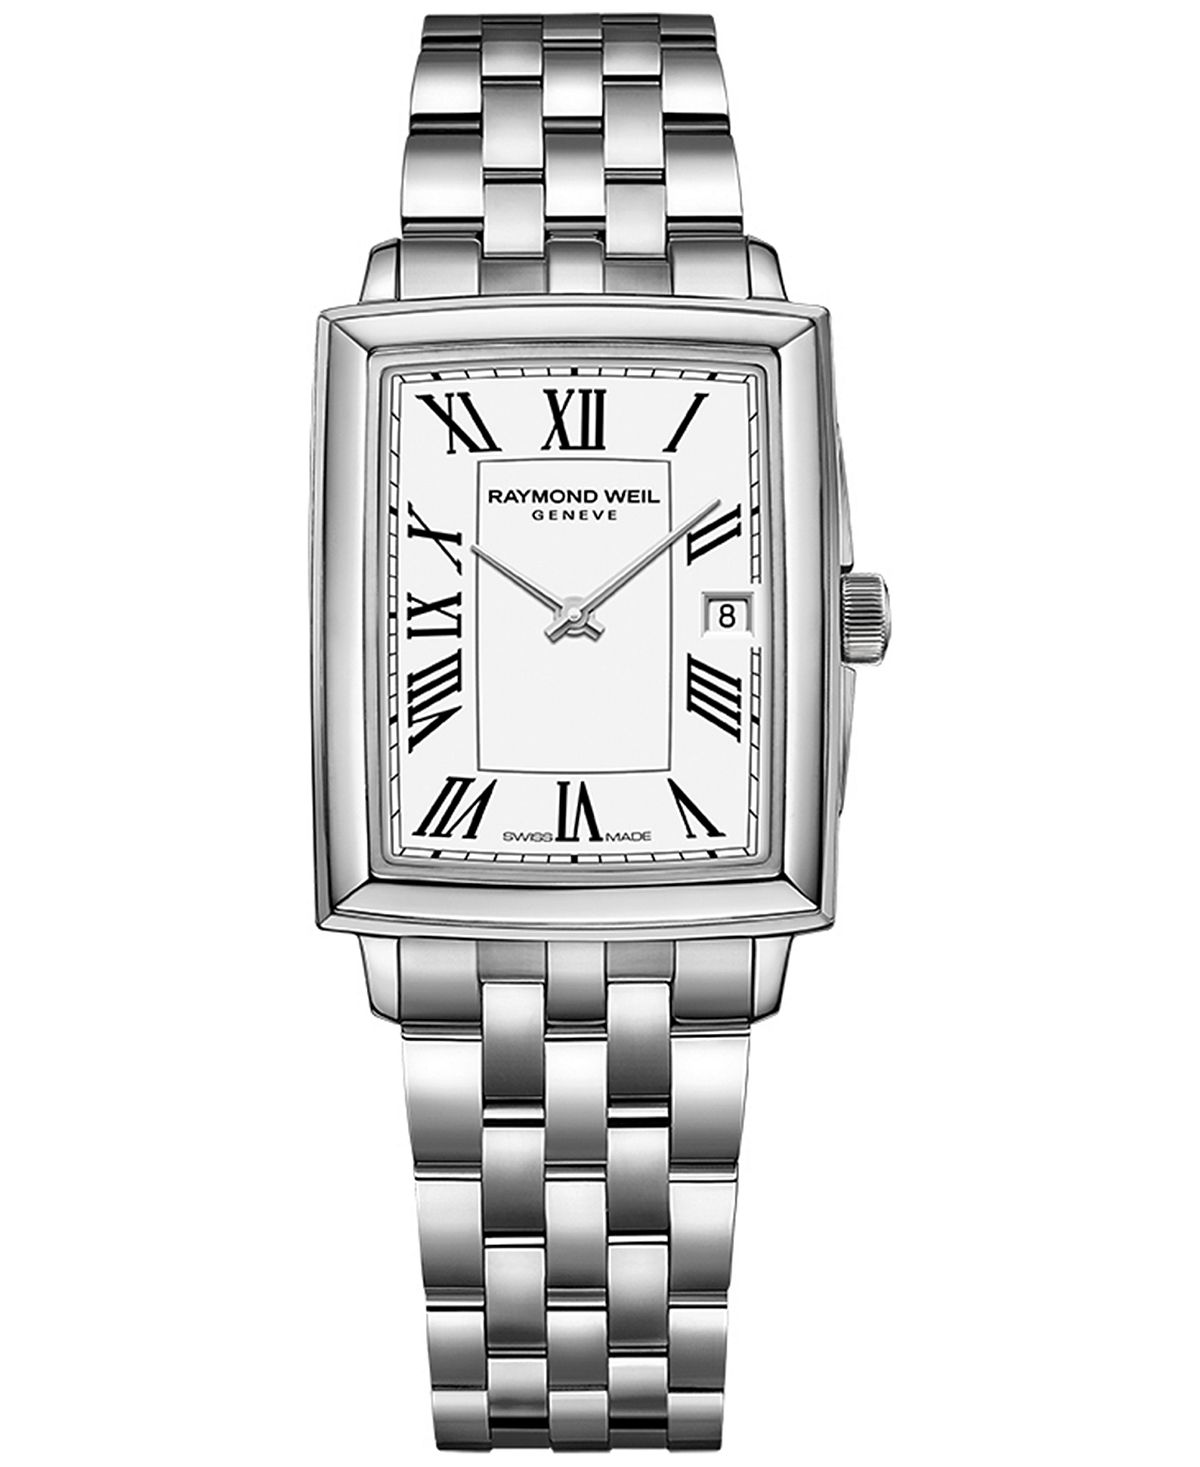 Женские швейцарские часы Toccata с браслетом из нержавеющей стали 25x34 мм Raymond Weil, белый